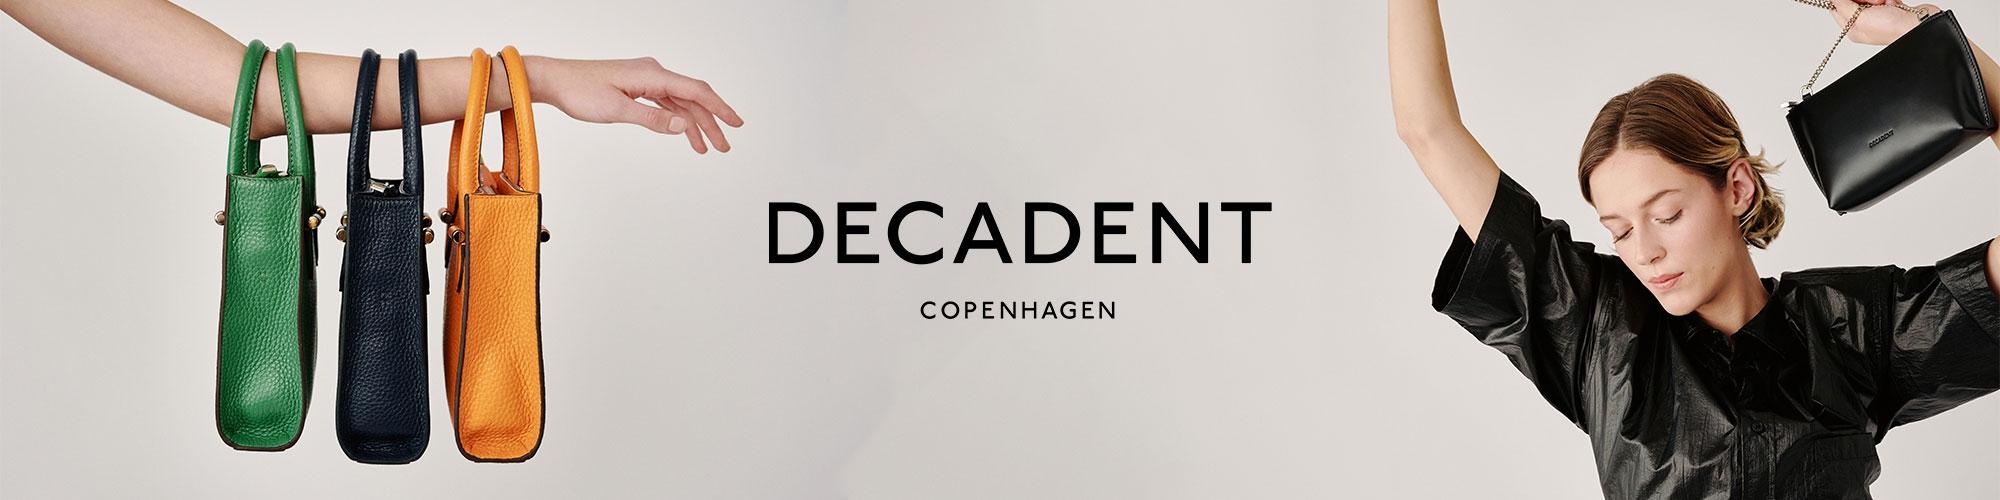 Decadent Copenhagen